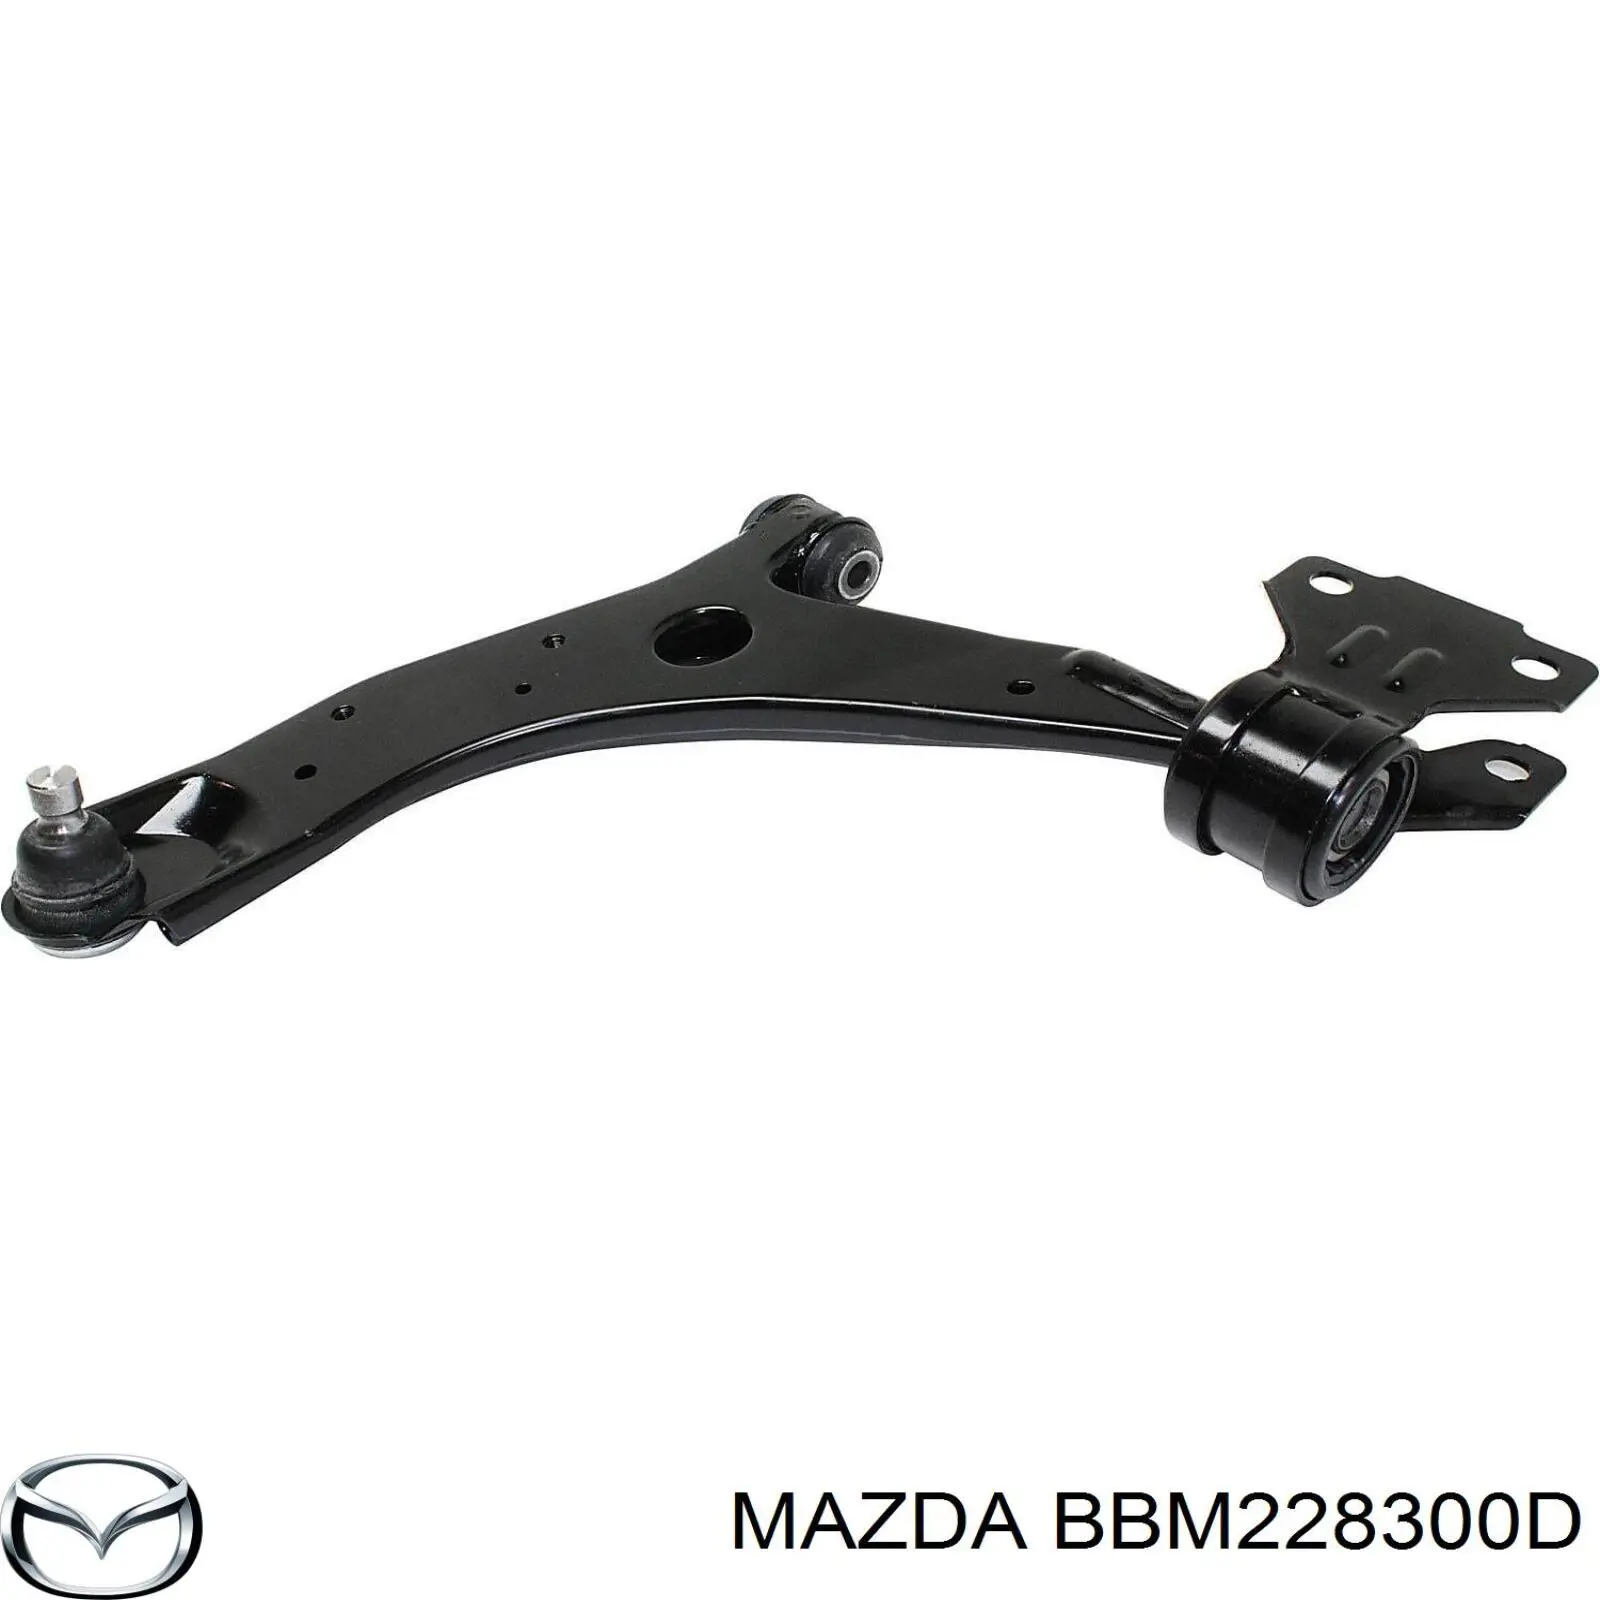 BBM228300C Mazda brazo de suspension trasera